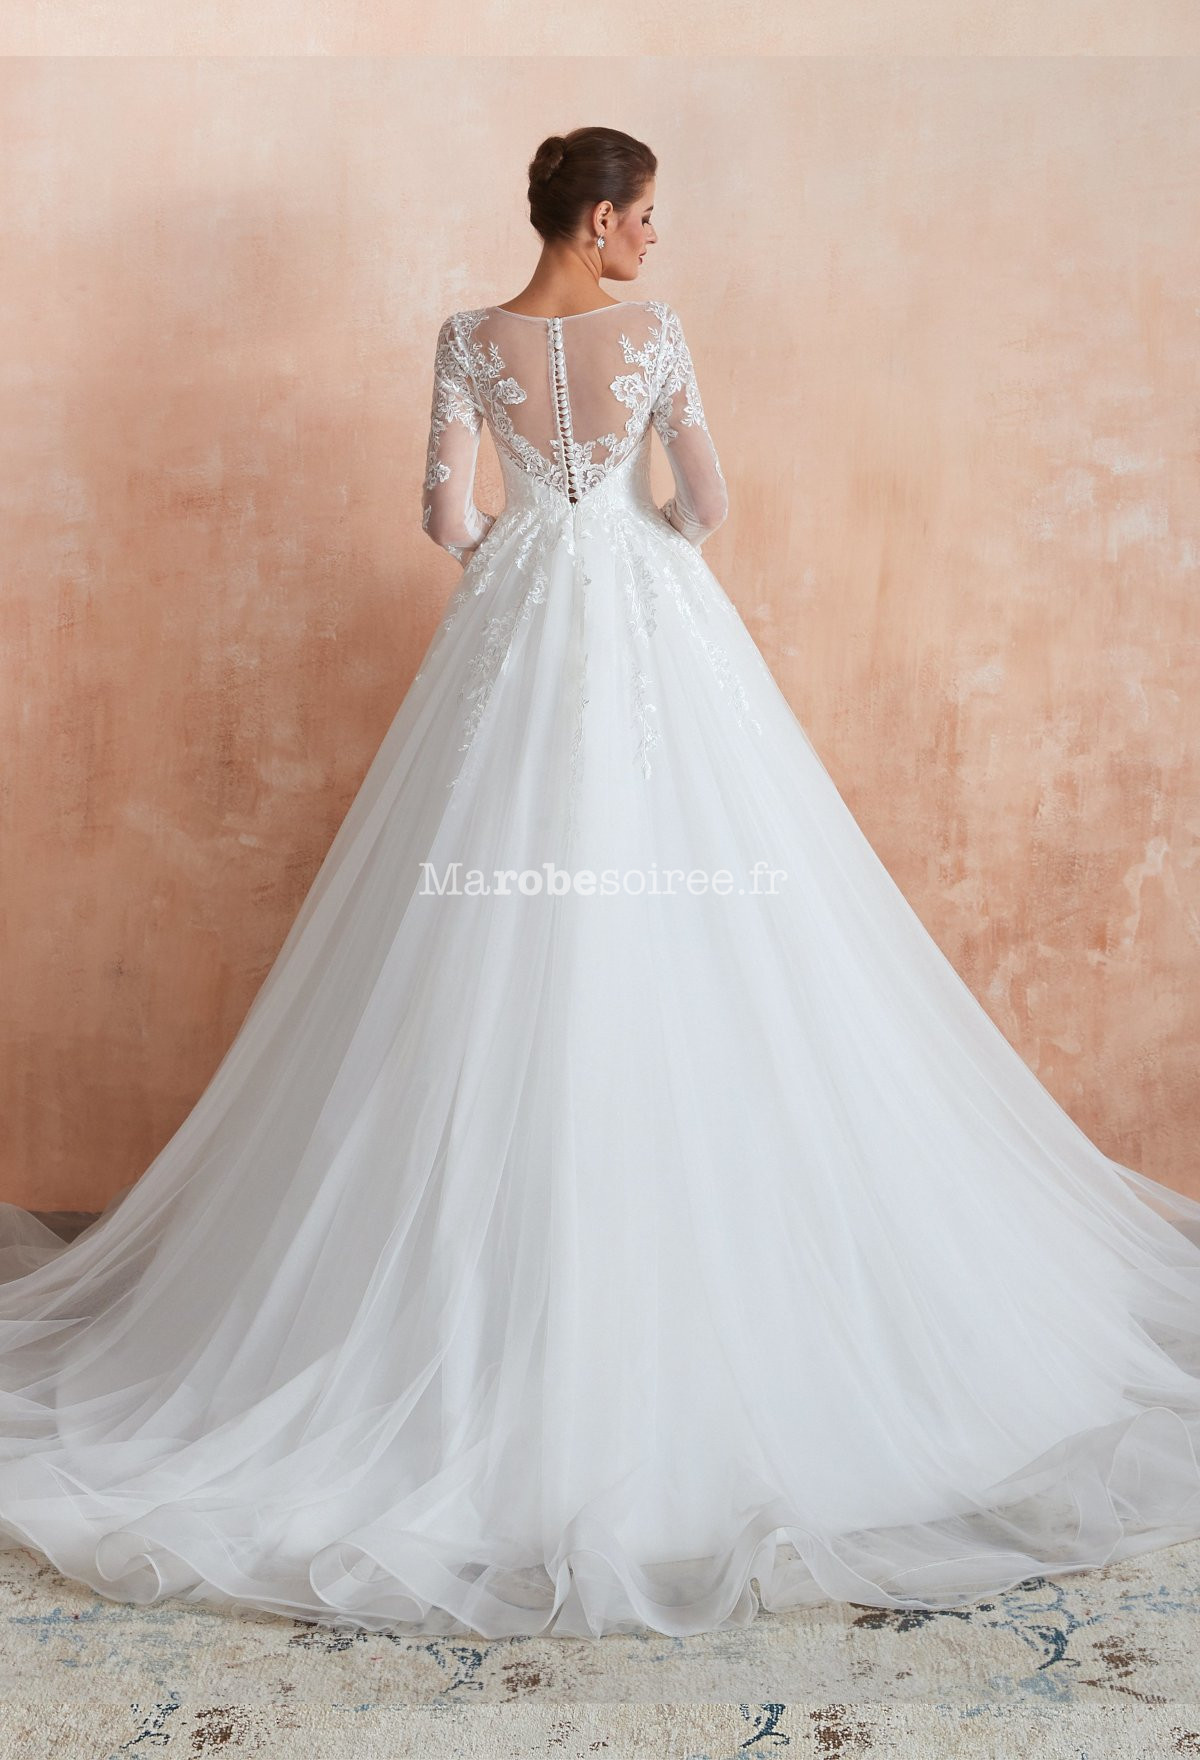 magnifique robe de princesse manche longue en dentelle et tulle au volume  parfait - Ref M373 - Robes de mariée